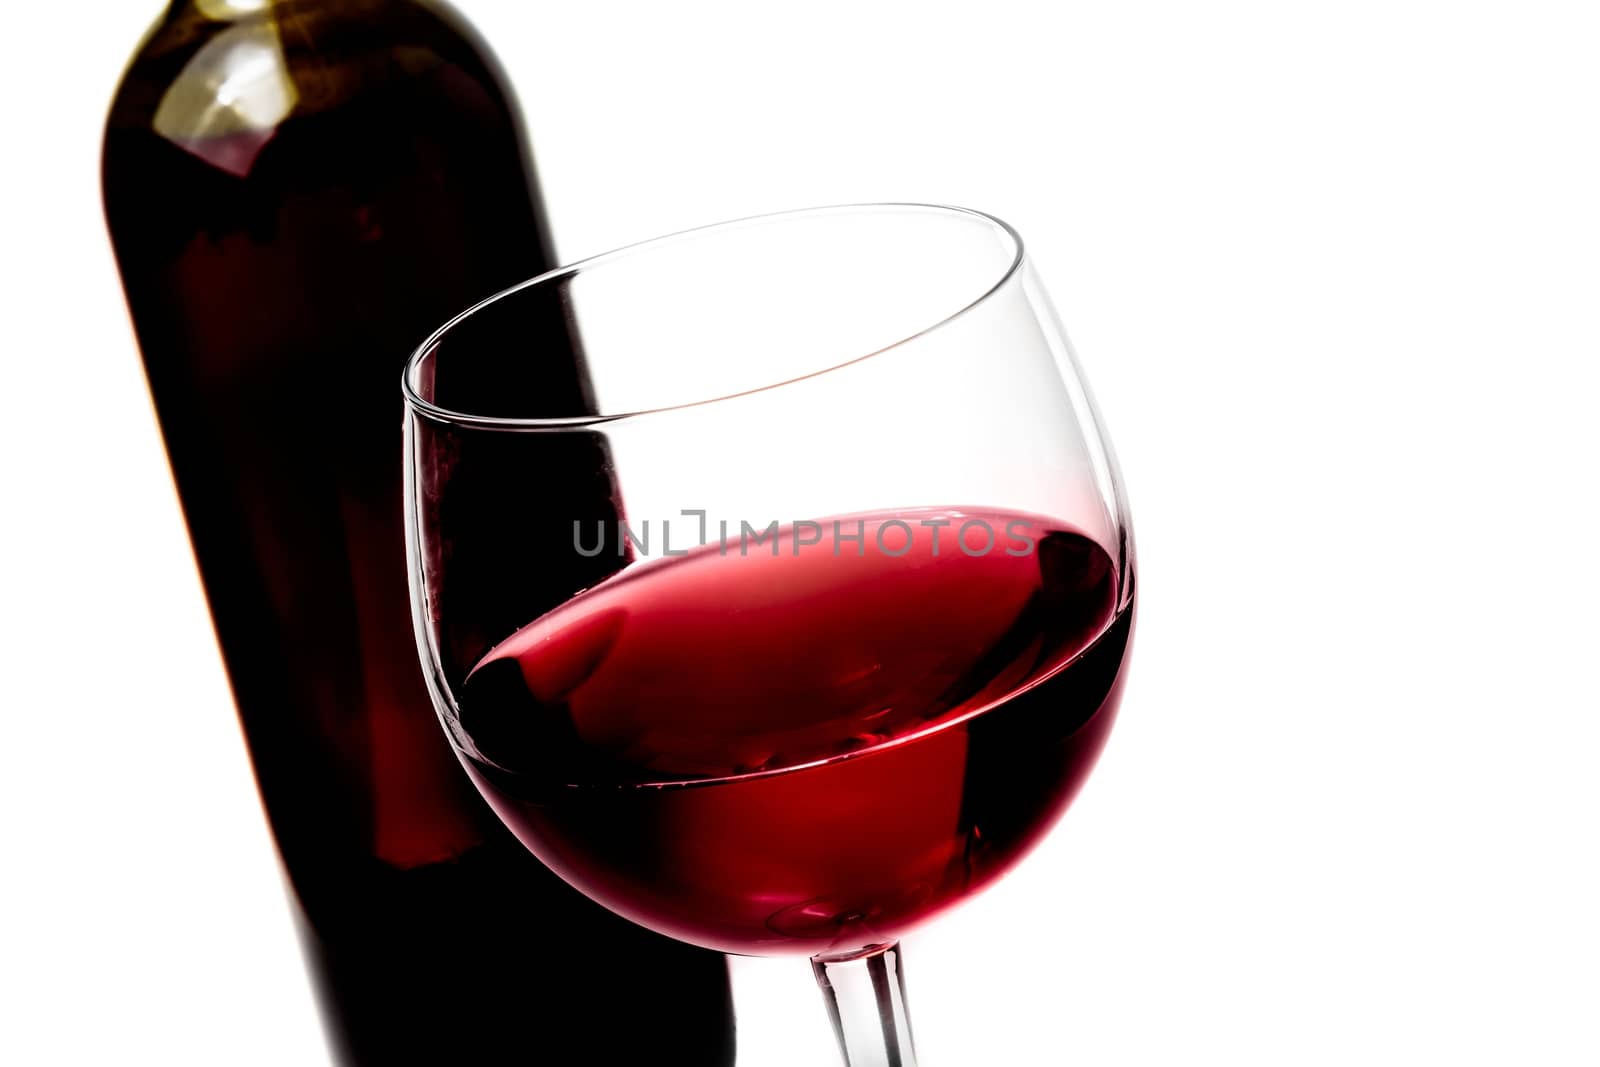 red wine glass near wine bottle by donfiore